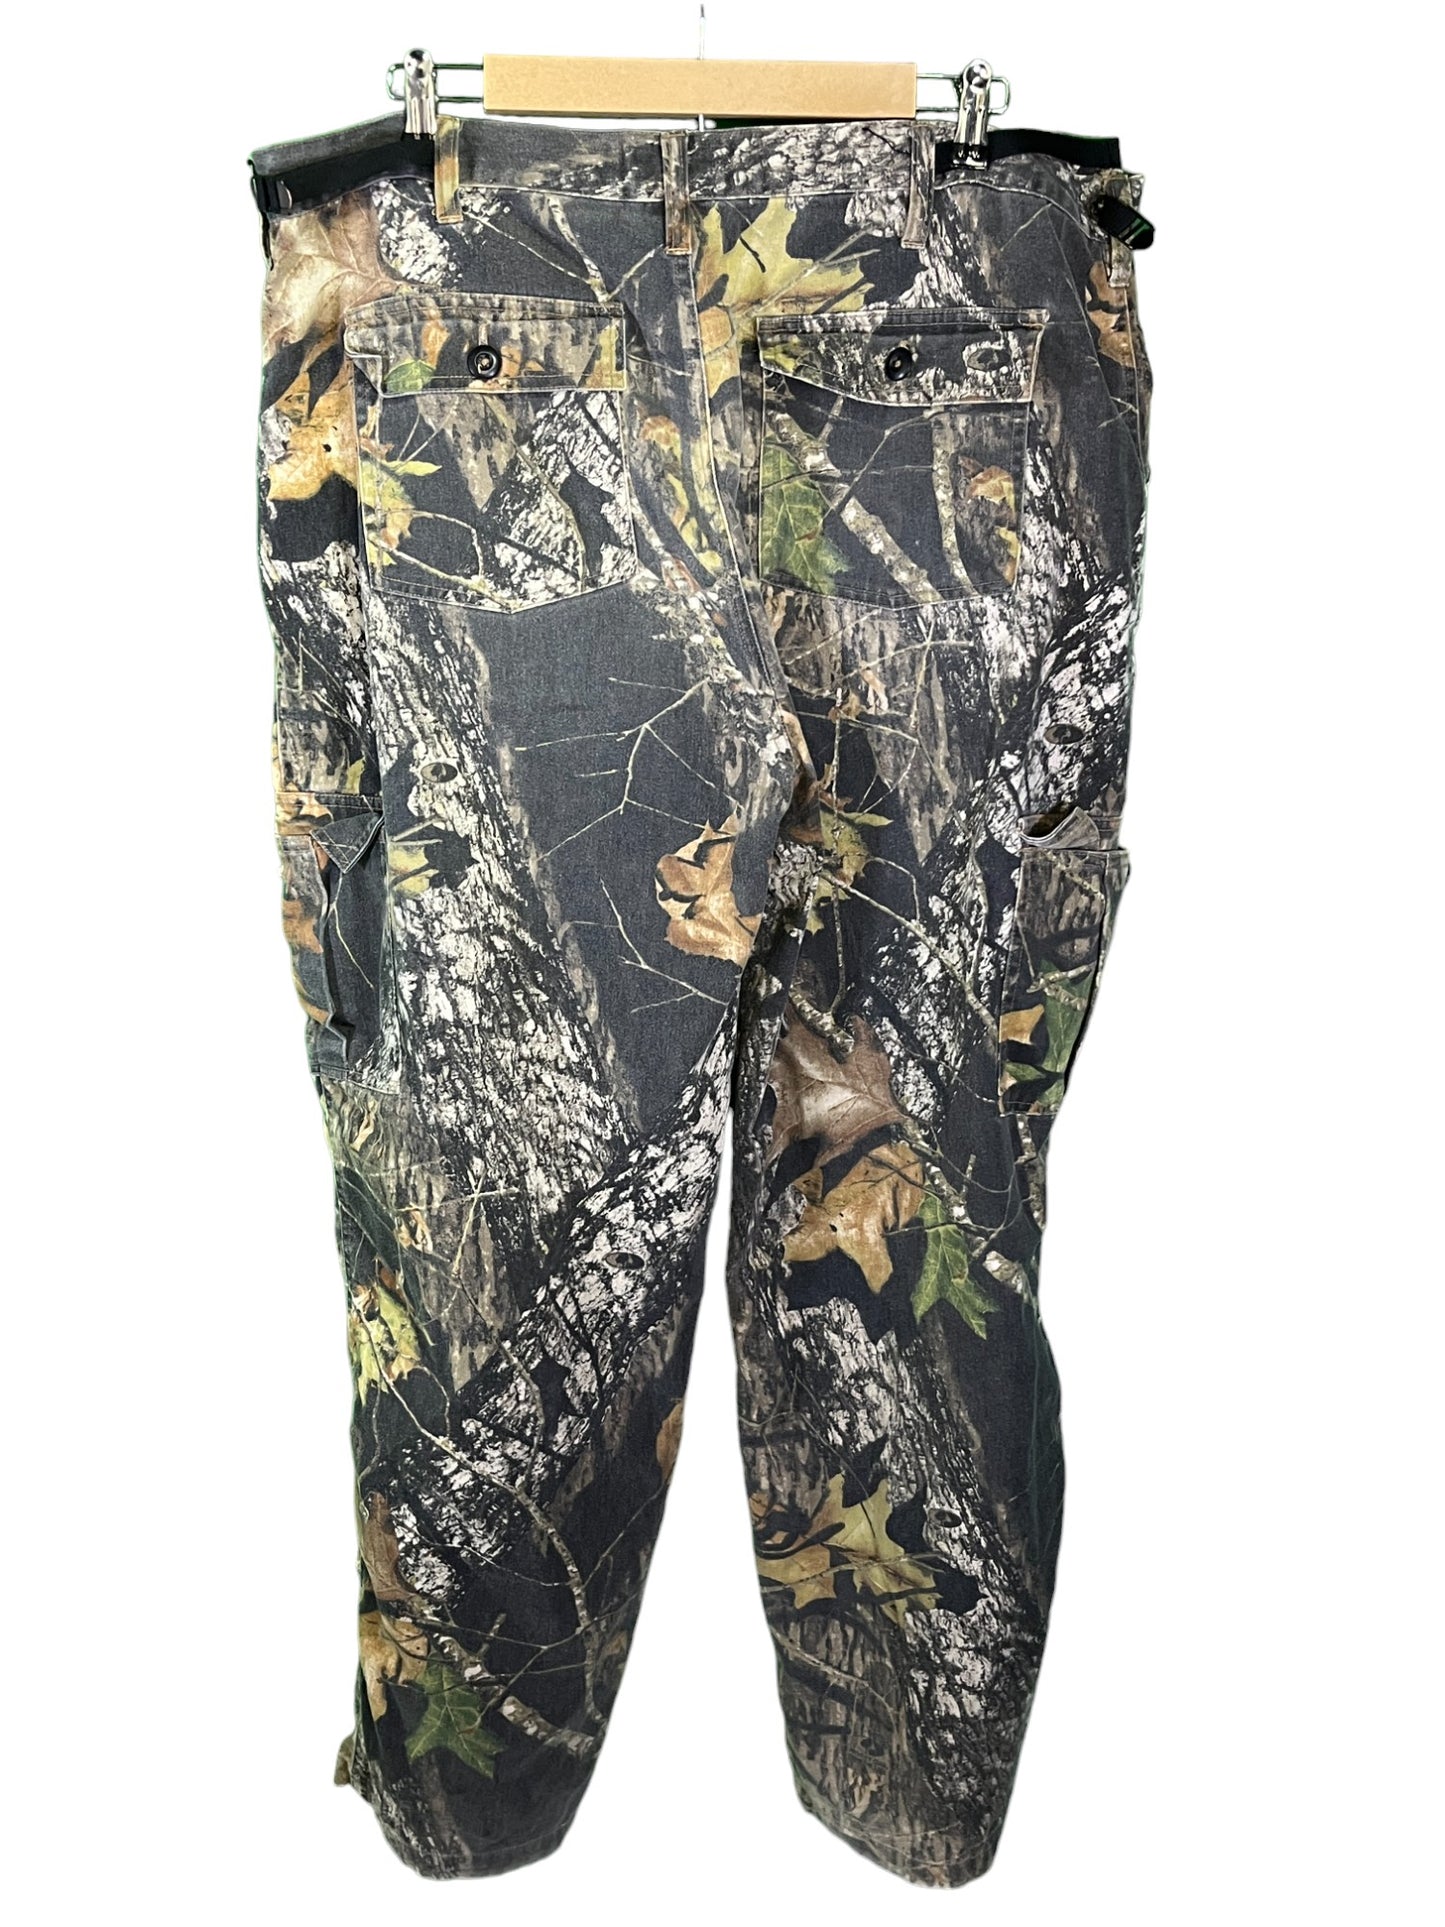 FieldStaff Hunters Woodland Camo Cargo Pants Size 38x32